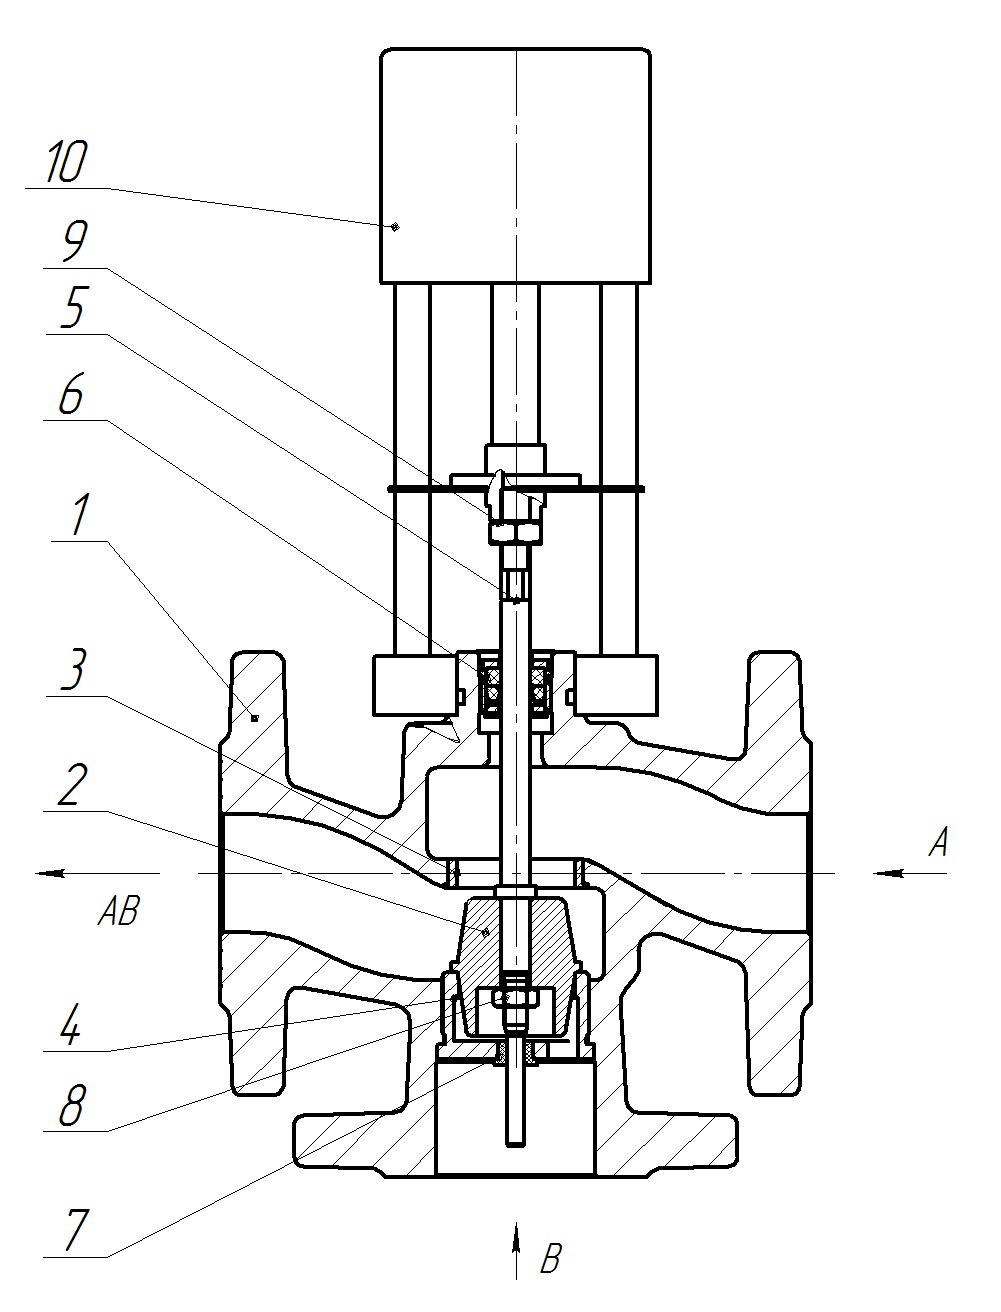 Клапан регулирующий трехходовой разделительный DN.ru 23ч901нж Ду50 Ру16 Kvs25 серый чугун СЧ20, фланцевый, Tmax до 150°С с электроприводом Катрабел TW-500-XD220